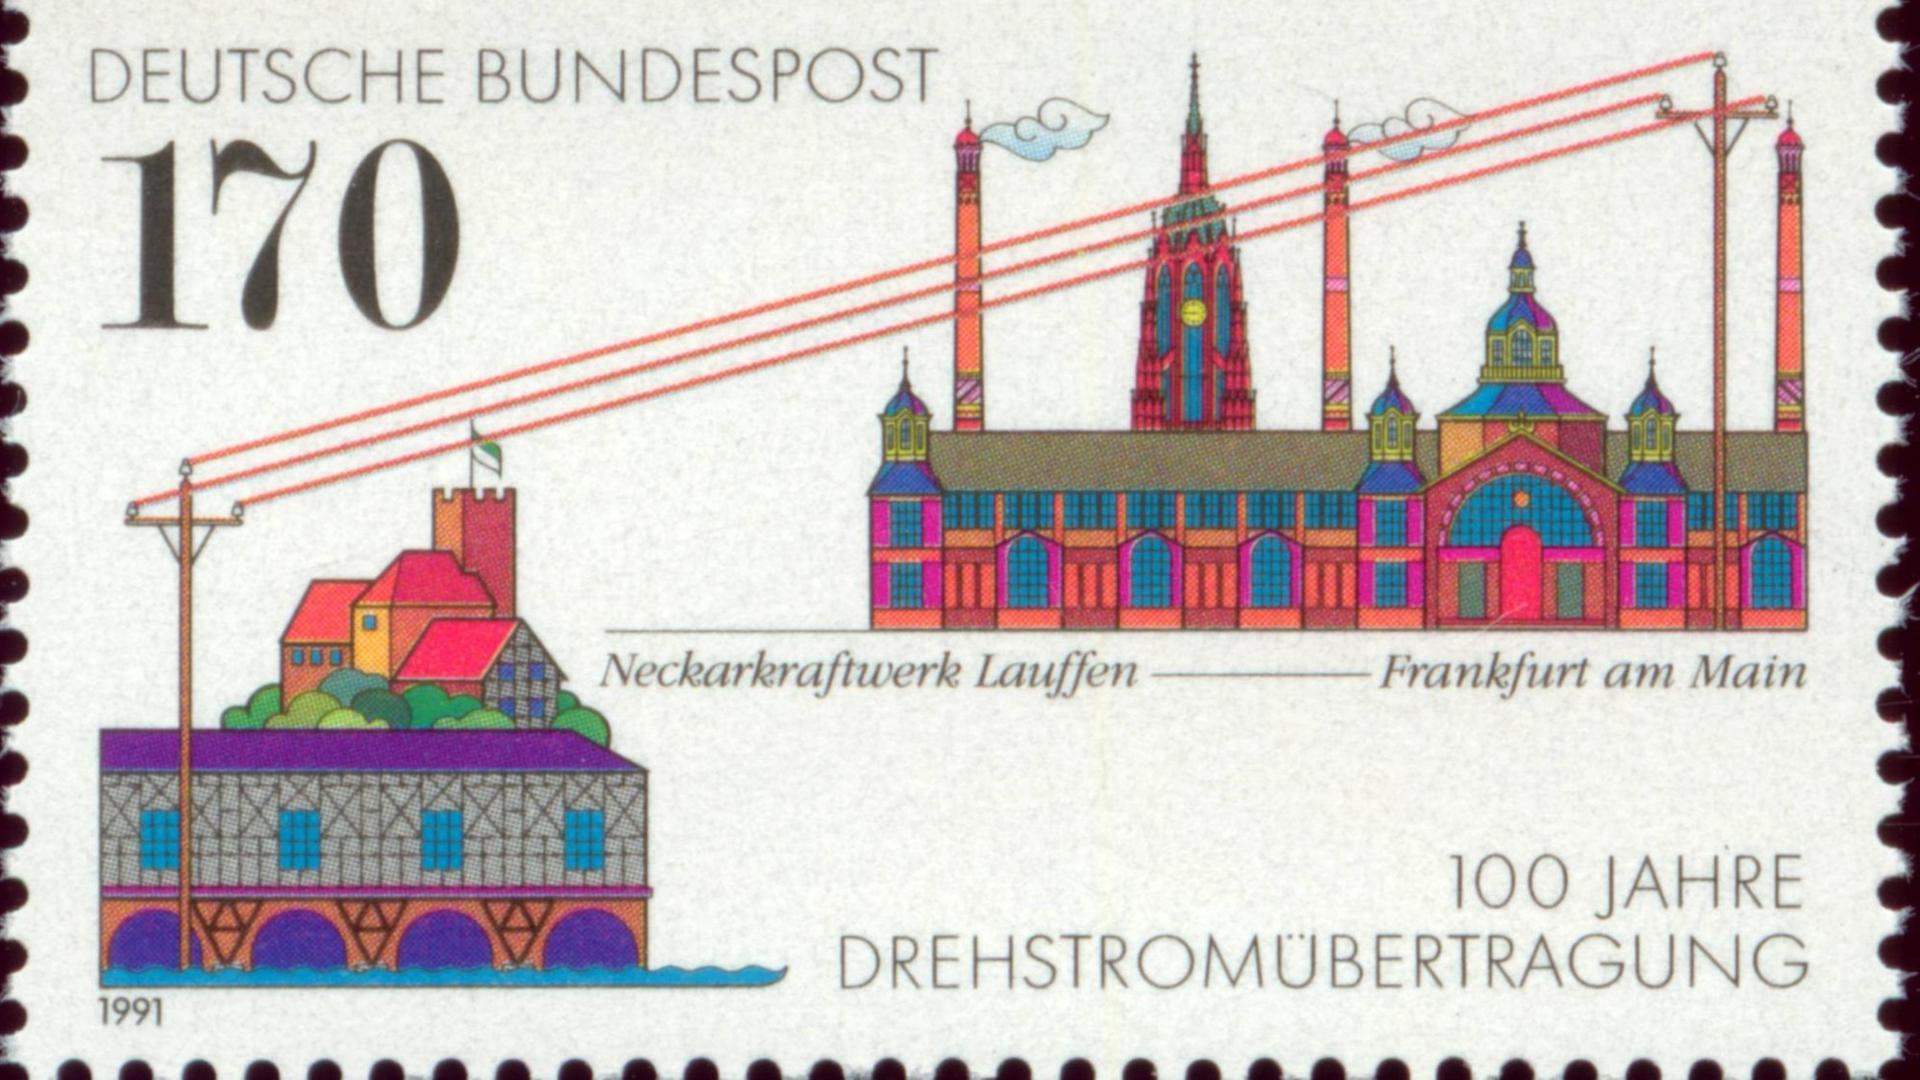 Auf einer Sonder-Biefmarke der deutschen Bundespost von 1991 ist die erste Drehstromübertragung zwischen dem Neckarkraftwerk Lauffen und Fankfurt am Main 100 Jahre zuvor dargestellt Mit einer Sondermarke erinnerte die Deutsche Bundespost 1991 an die Drehstromübertragung zwischen dem Neckarkraftwerk Lauffen und Fankfurt am Main 100 Jahre zuvor